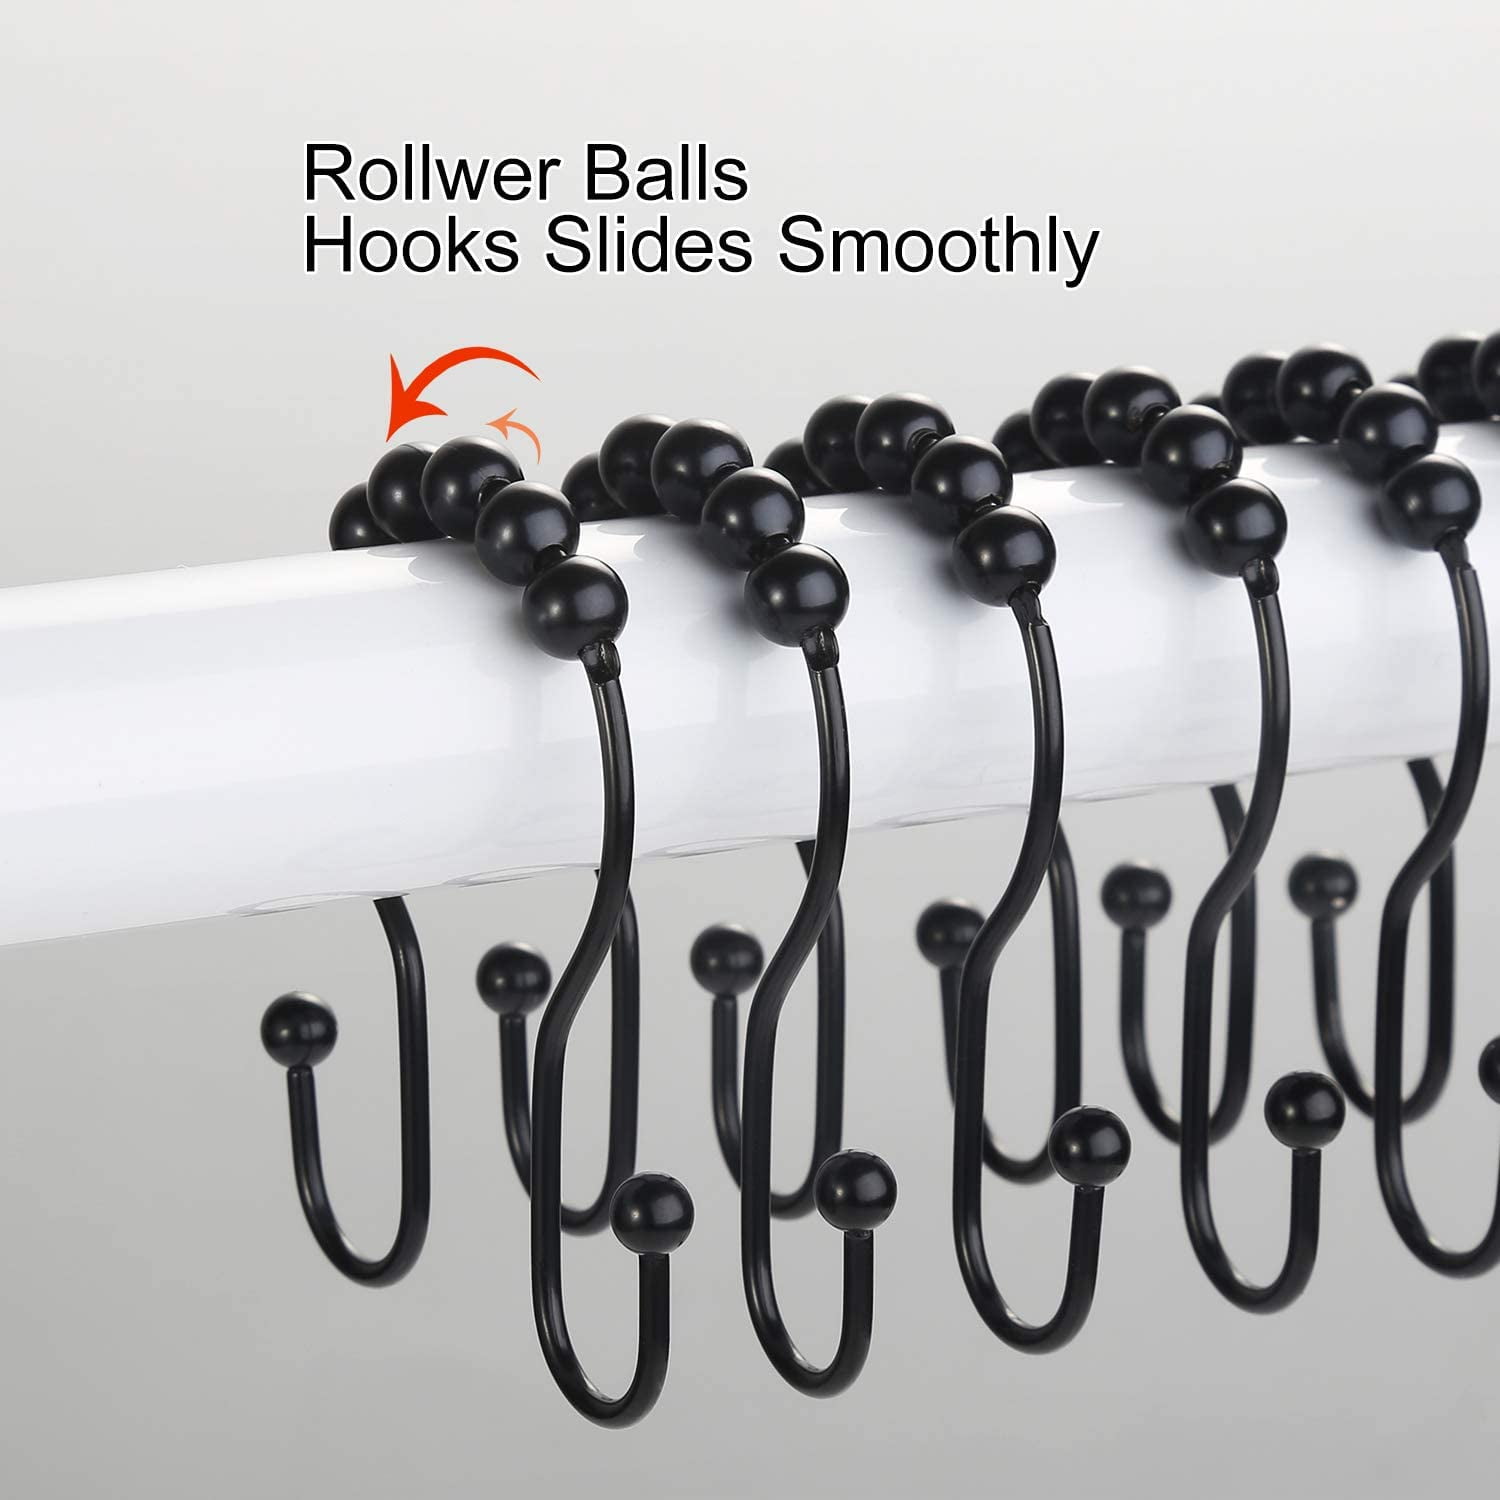 Stainless Steel 12 Pcs Shower Curtain Rings Roller Rust-Resistant Sliding Hooks